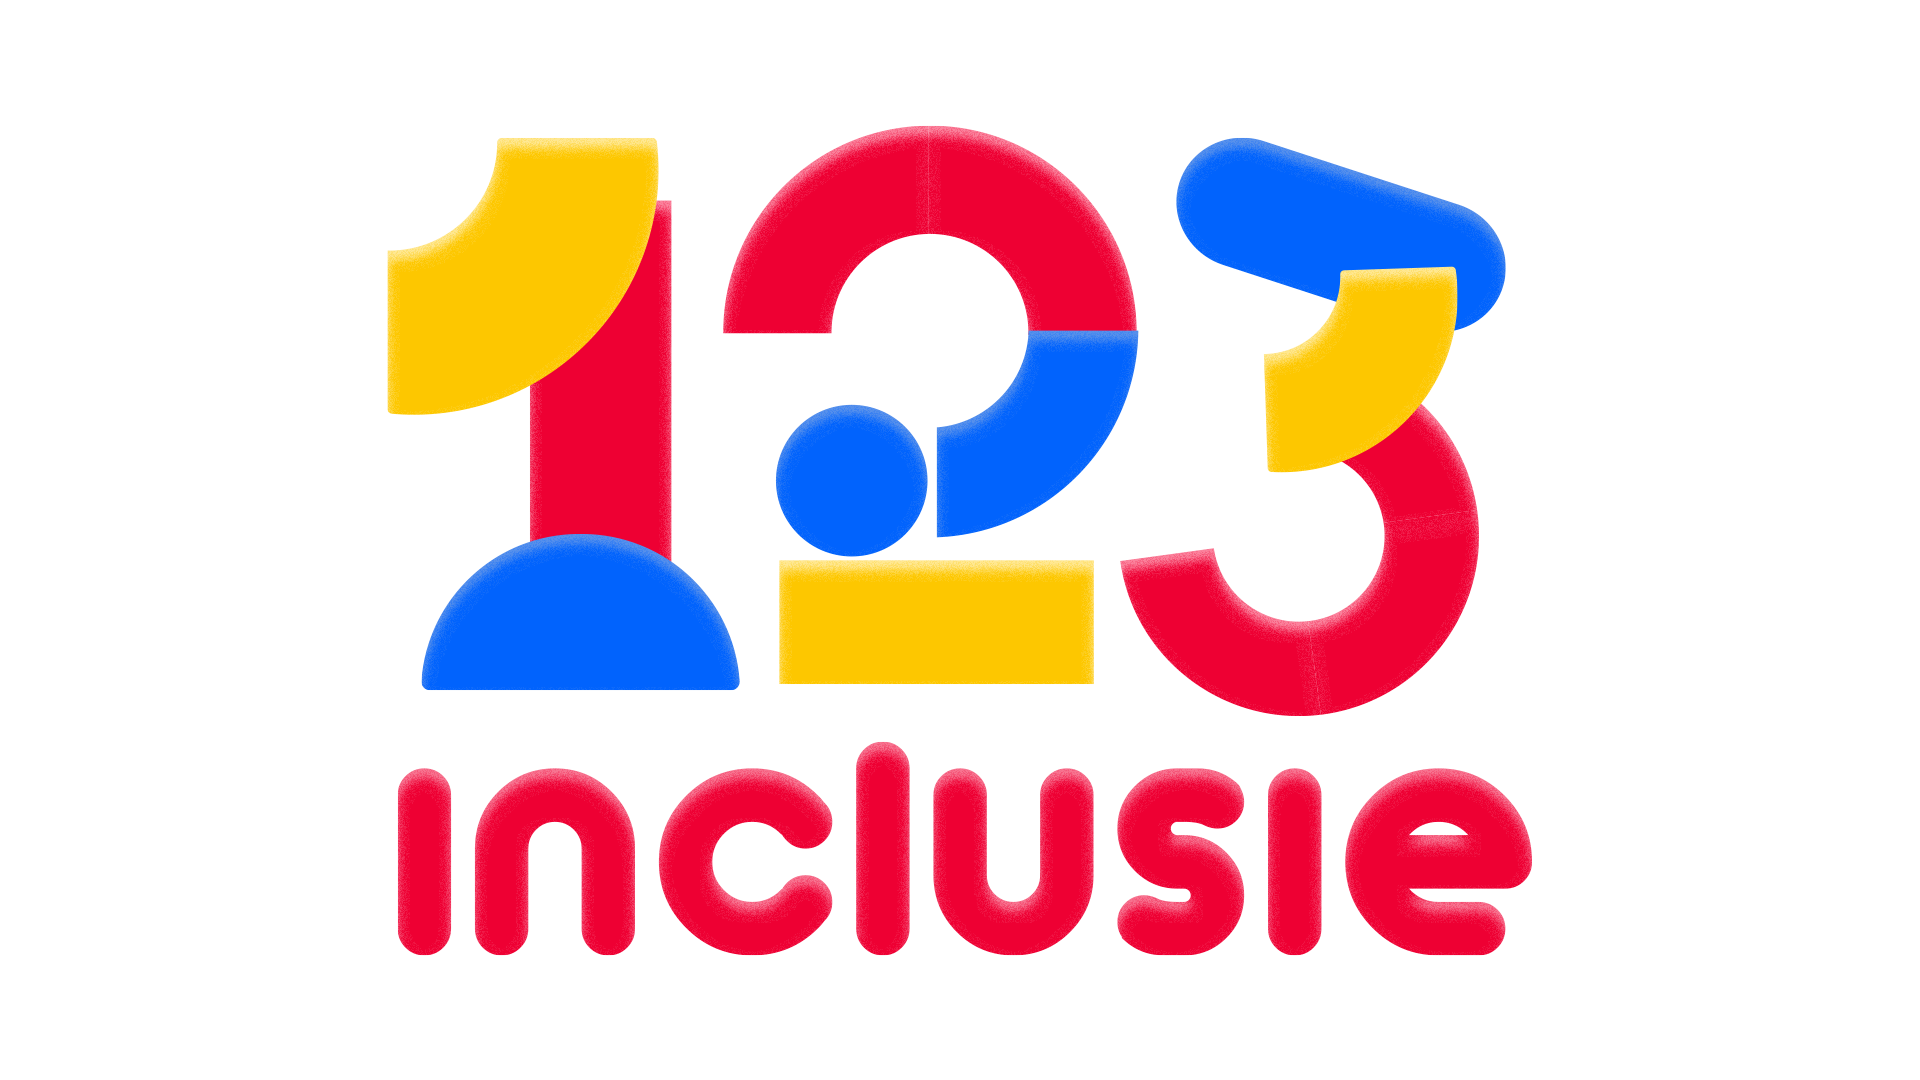 123 Inclusie, speelse letters in rood, blauw, geel